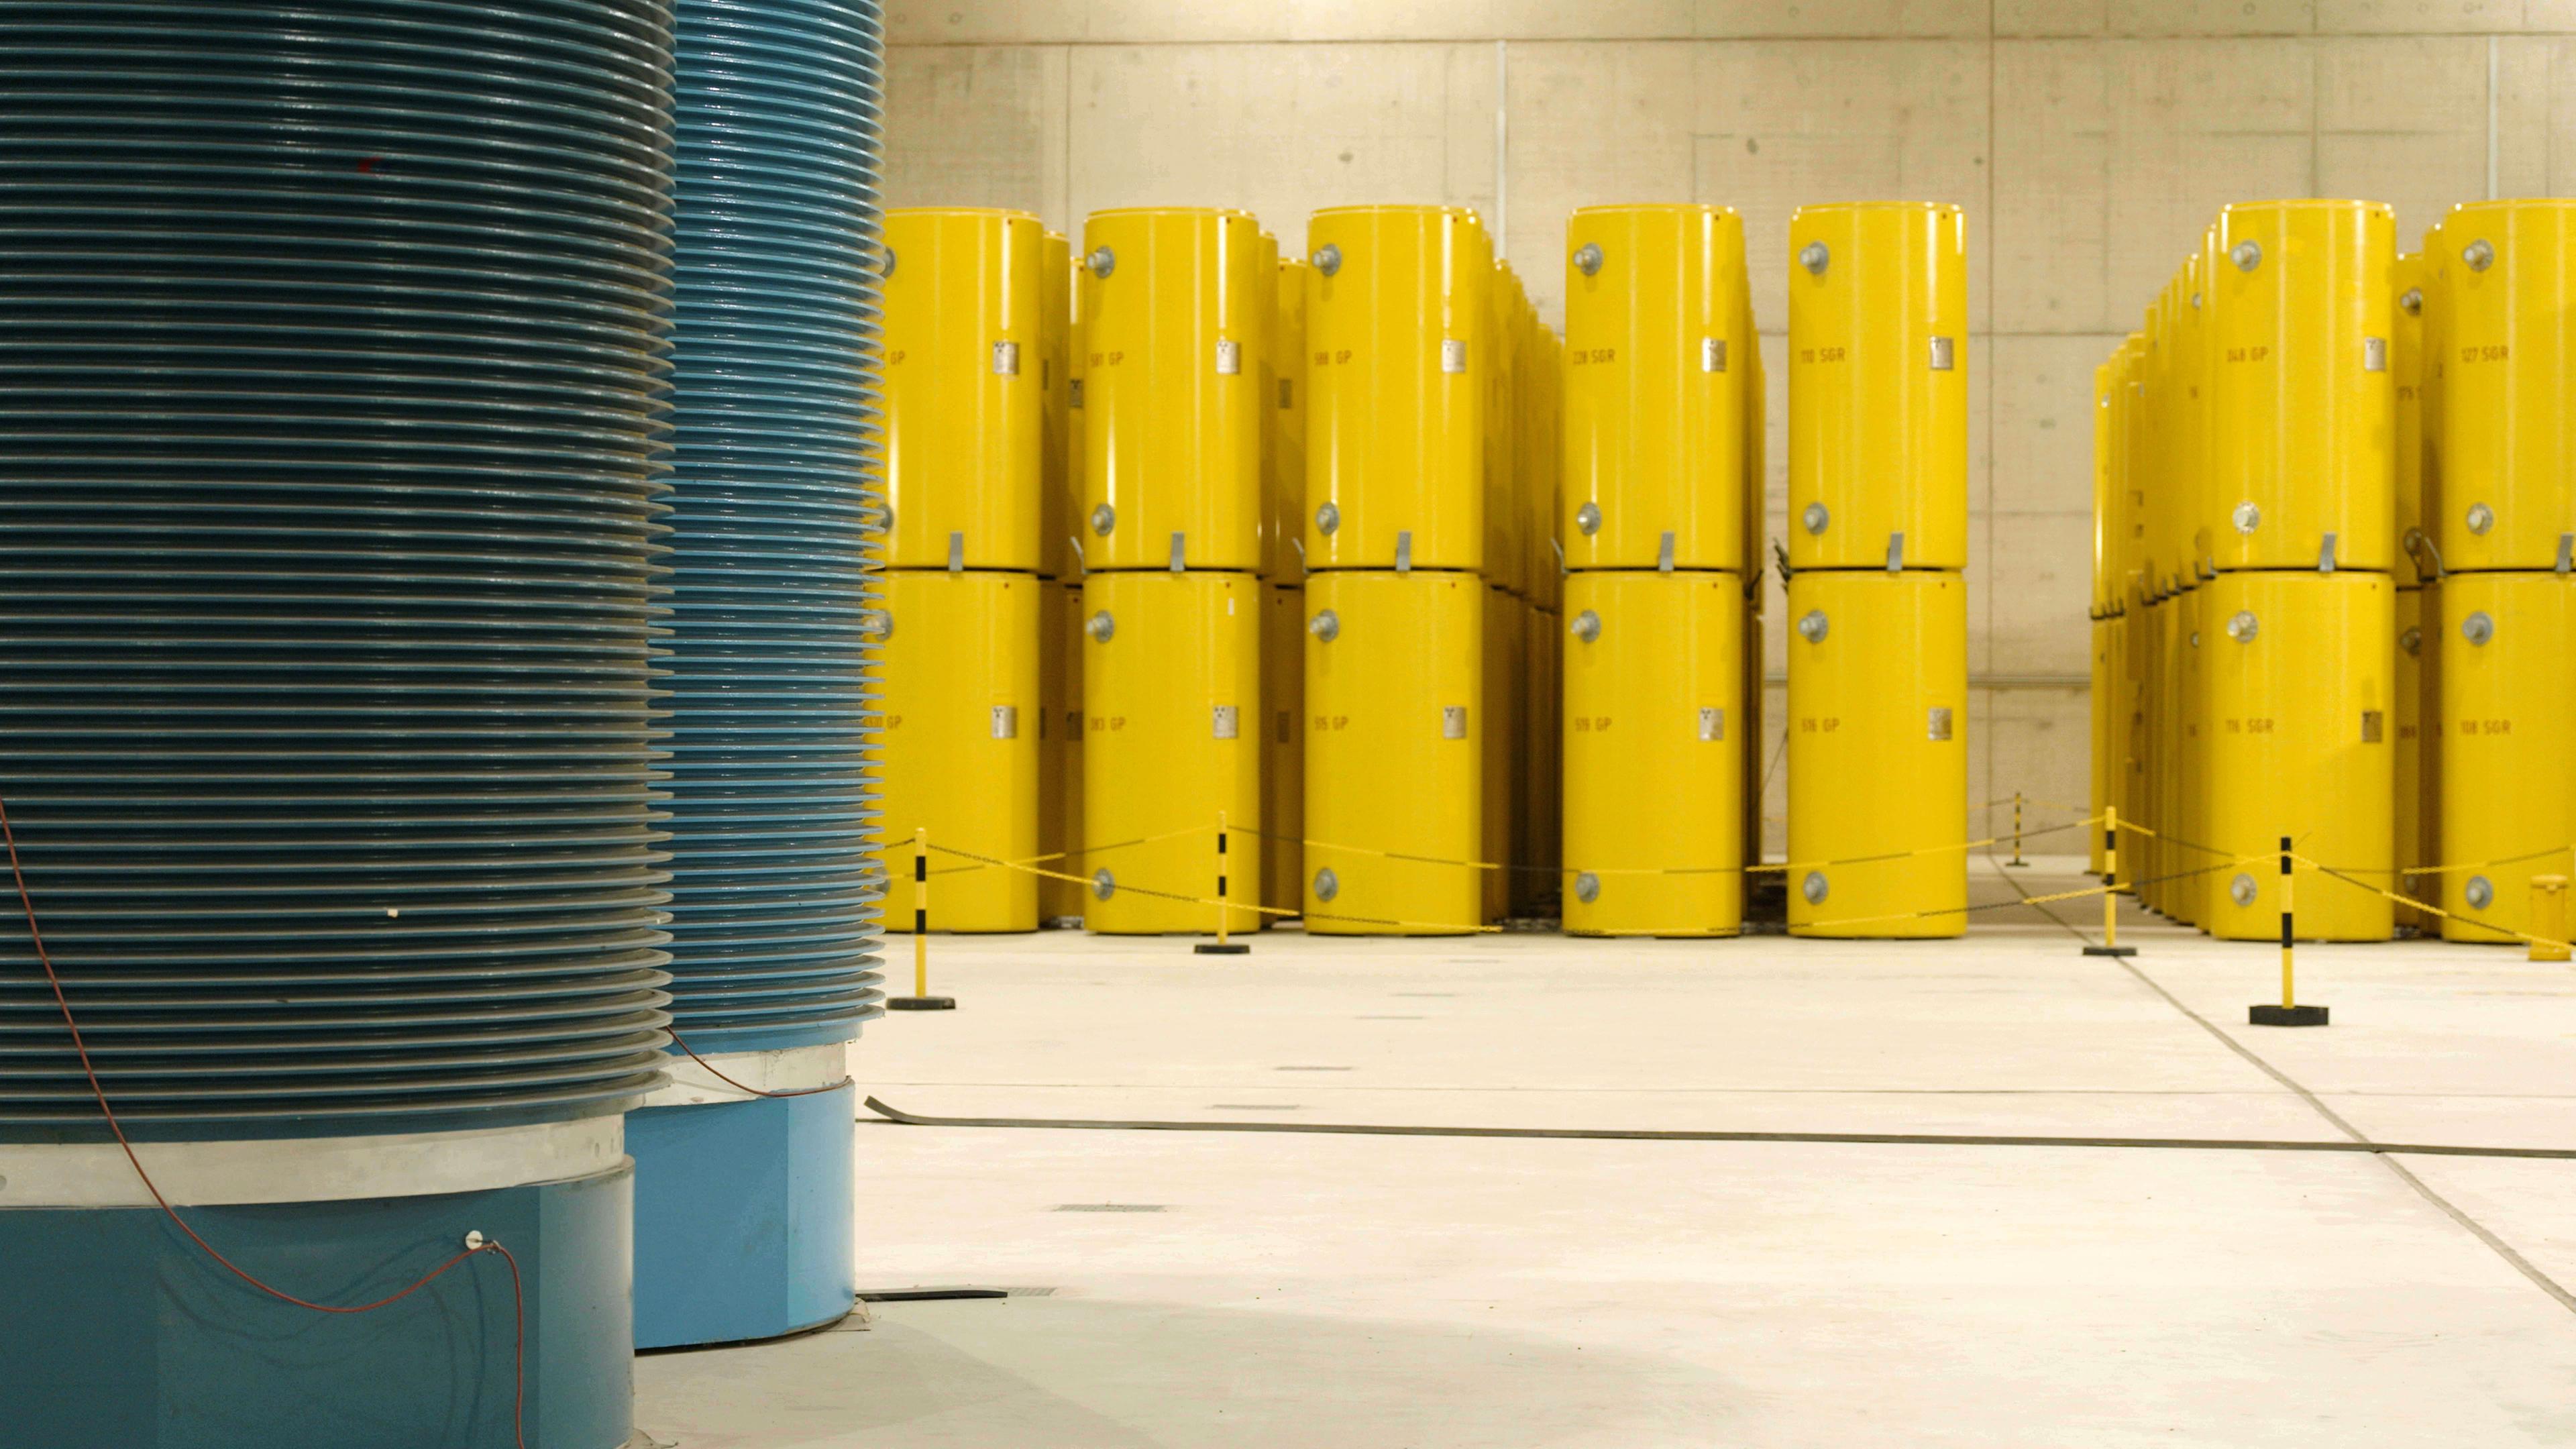 In einer Halle stehen gelbe Castorbehälter für Atommüll.